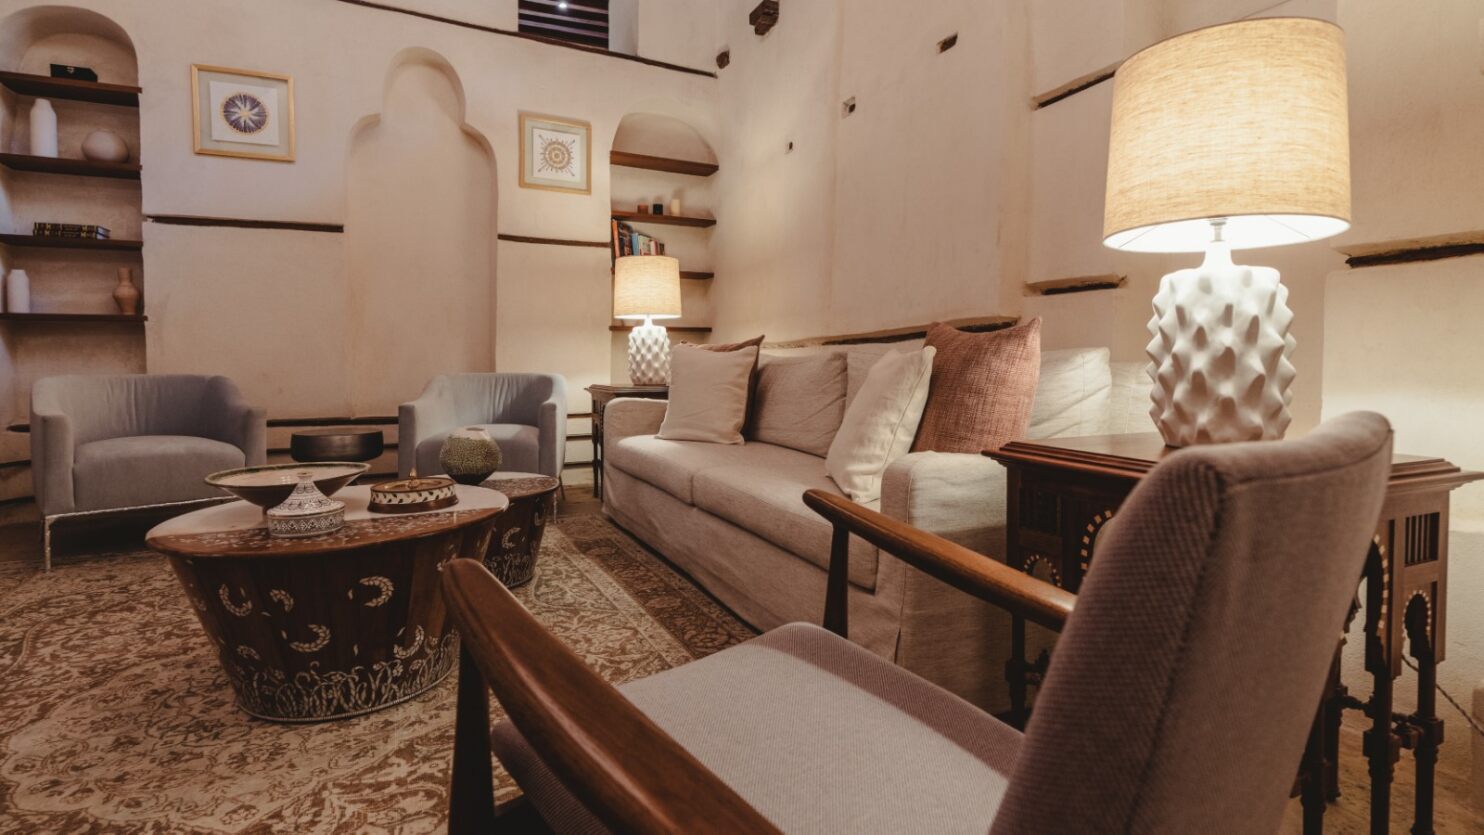 La maison Kedwan offre un mariage harmonieux entre tradition et modernité (© Al Balad Hospitality)